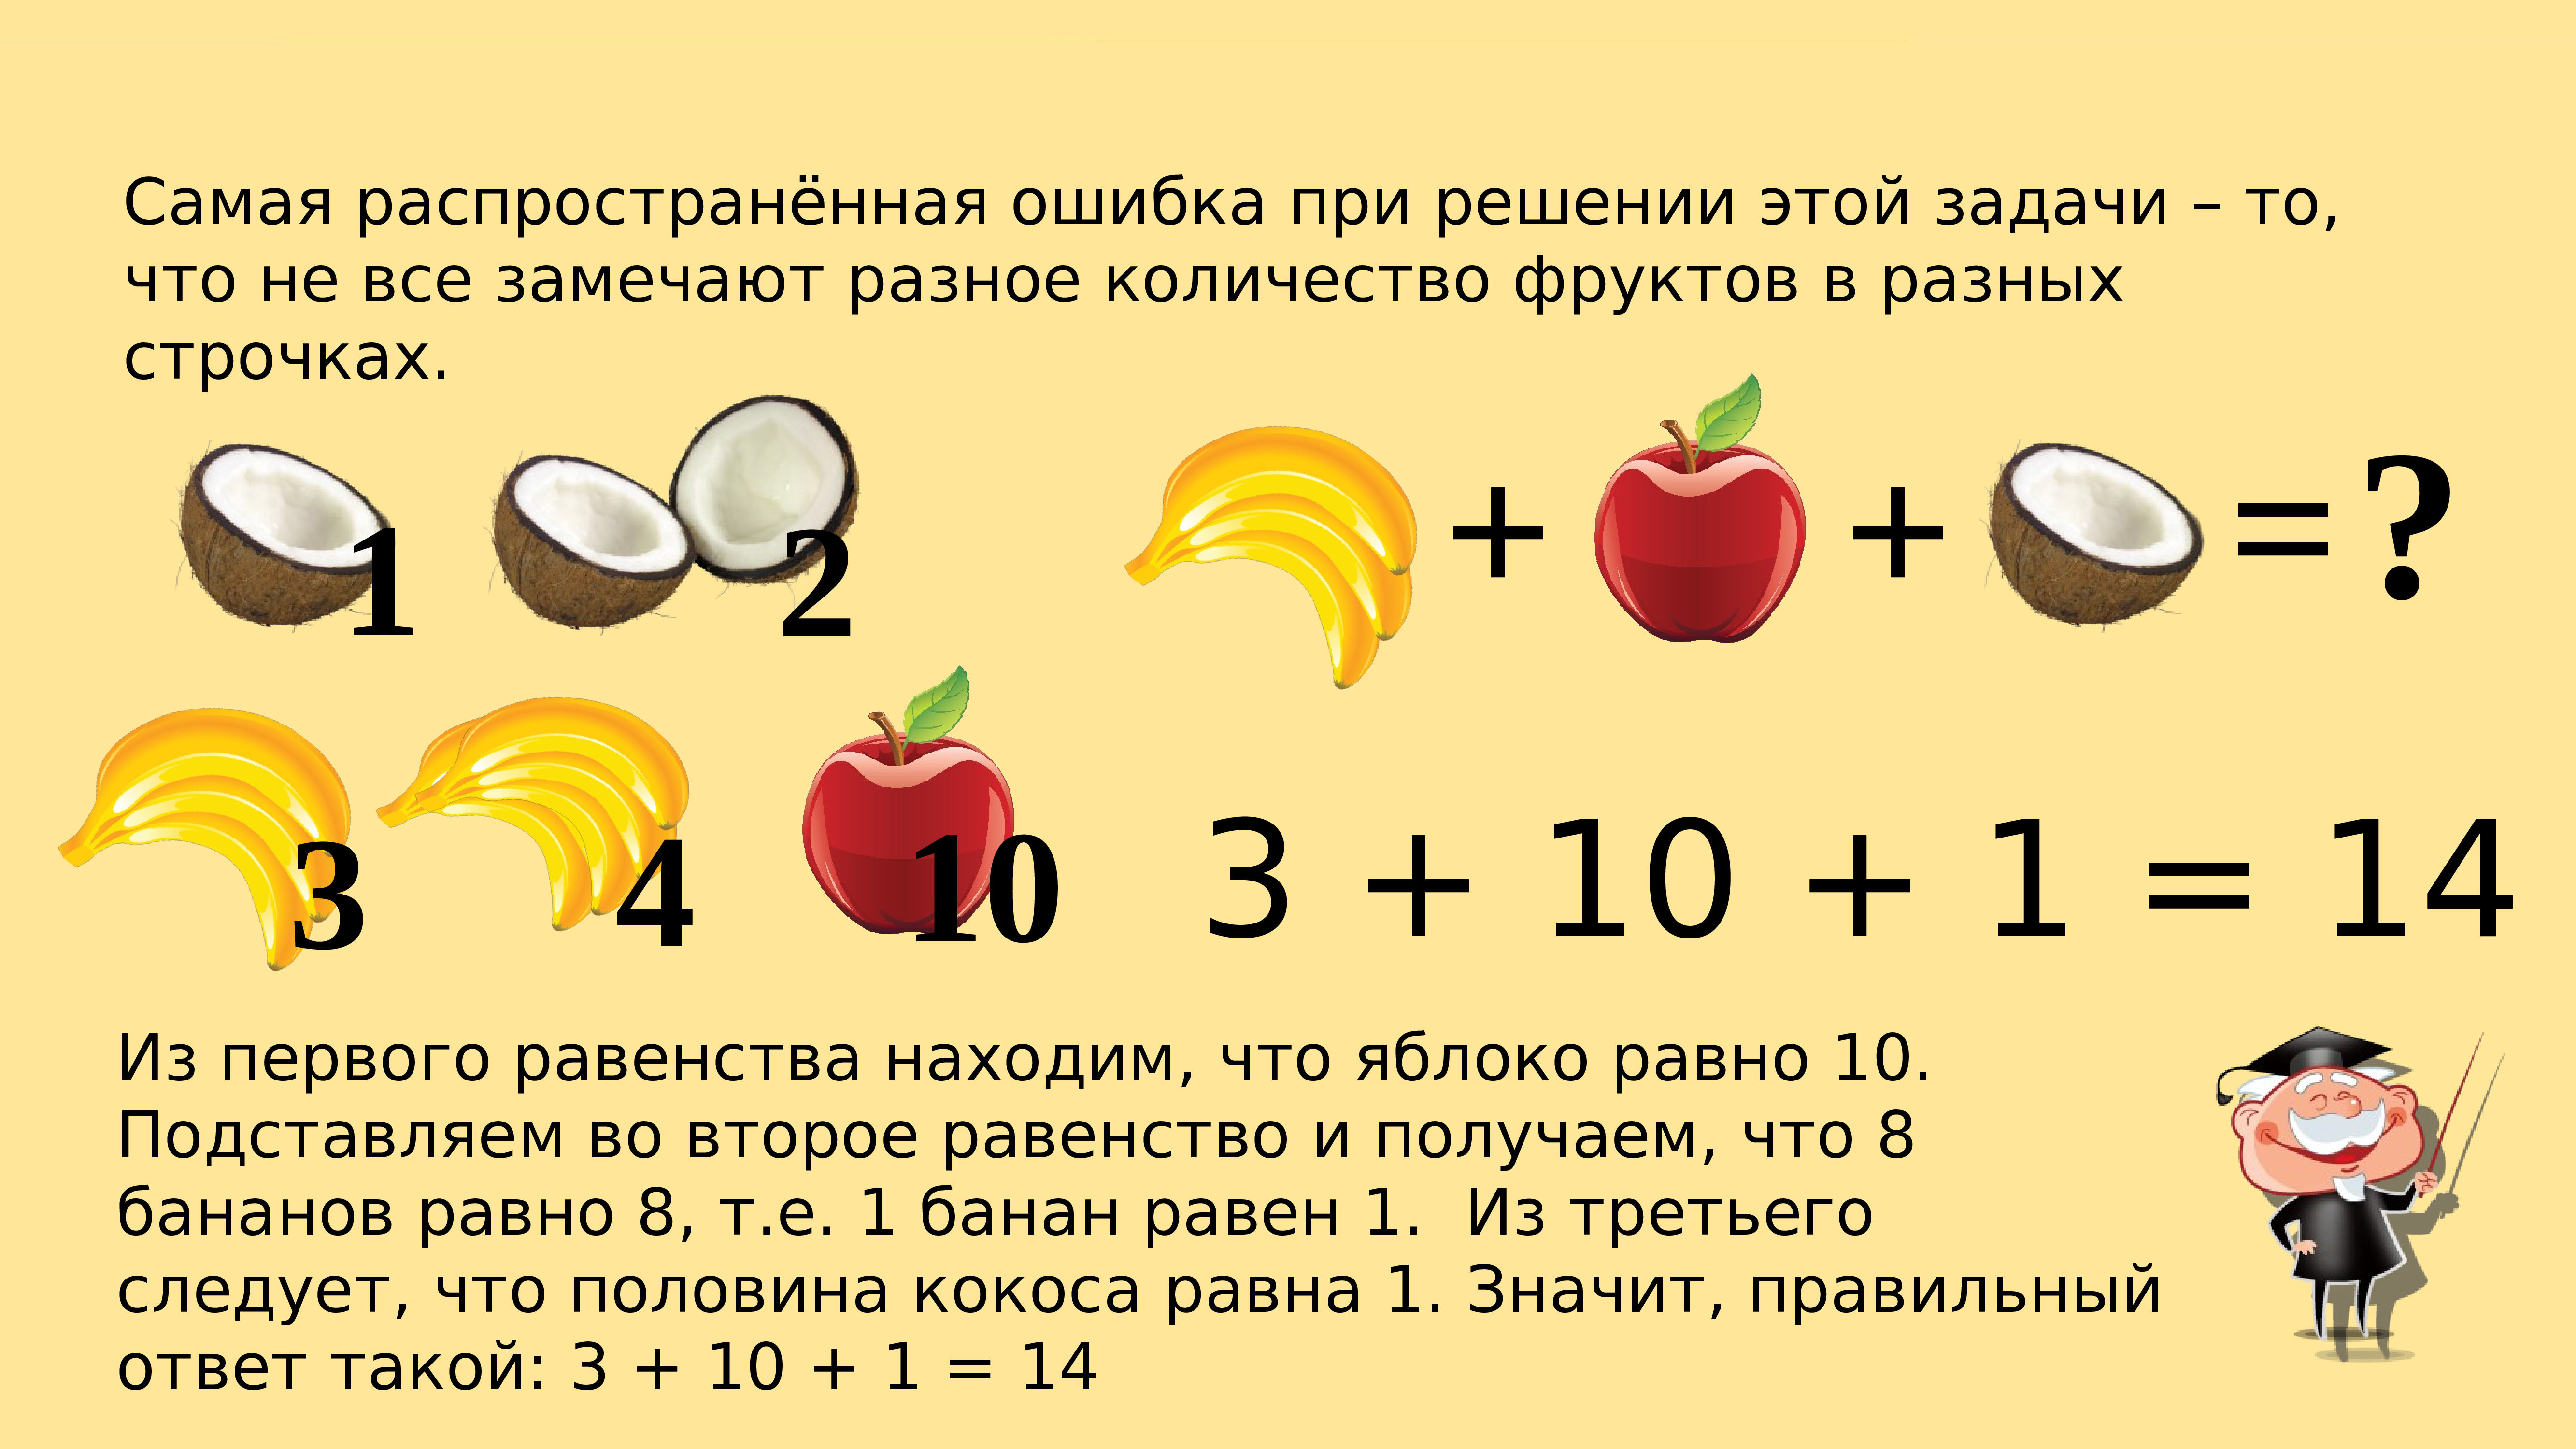 Математические задачи с фруктами